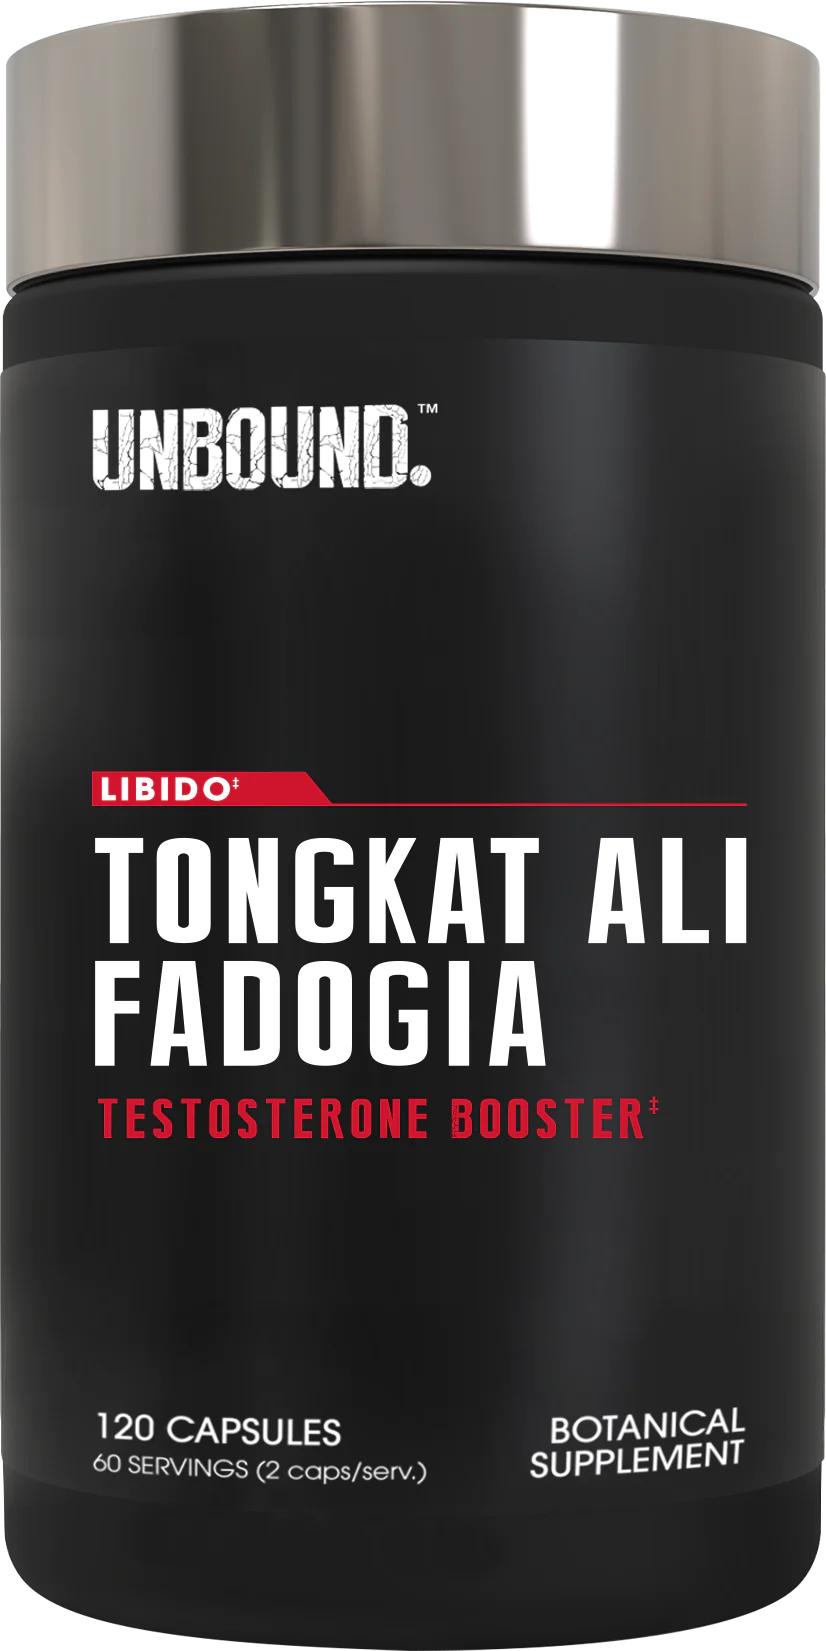 Tongkat Ali & Fadogia - UNBOUND